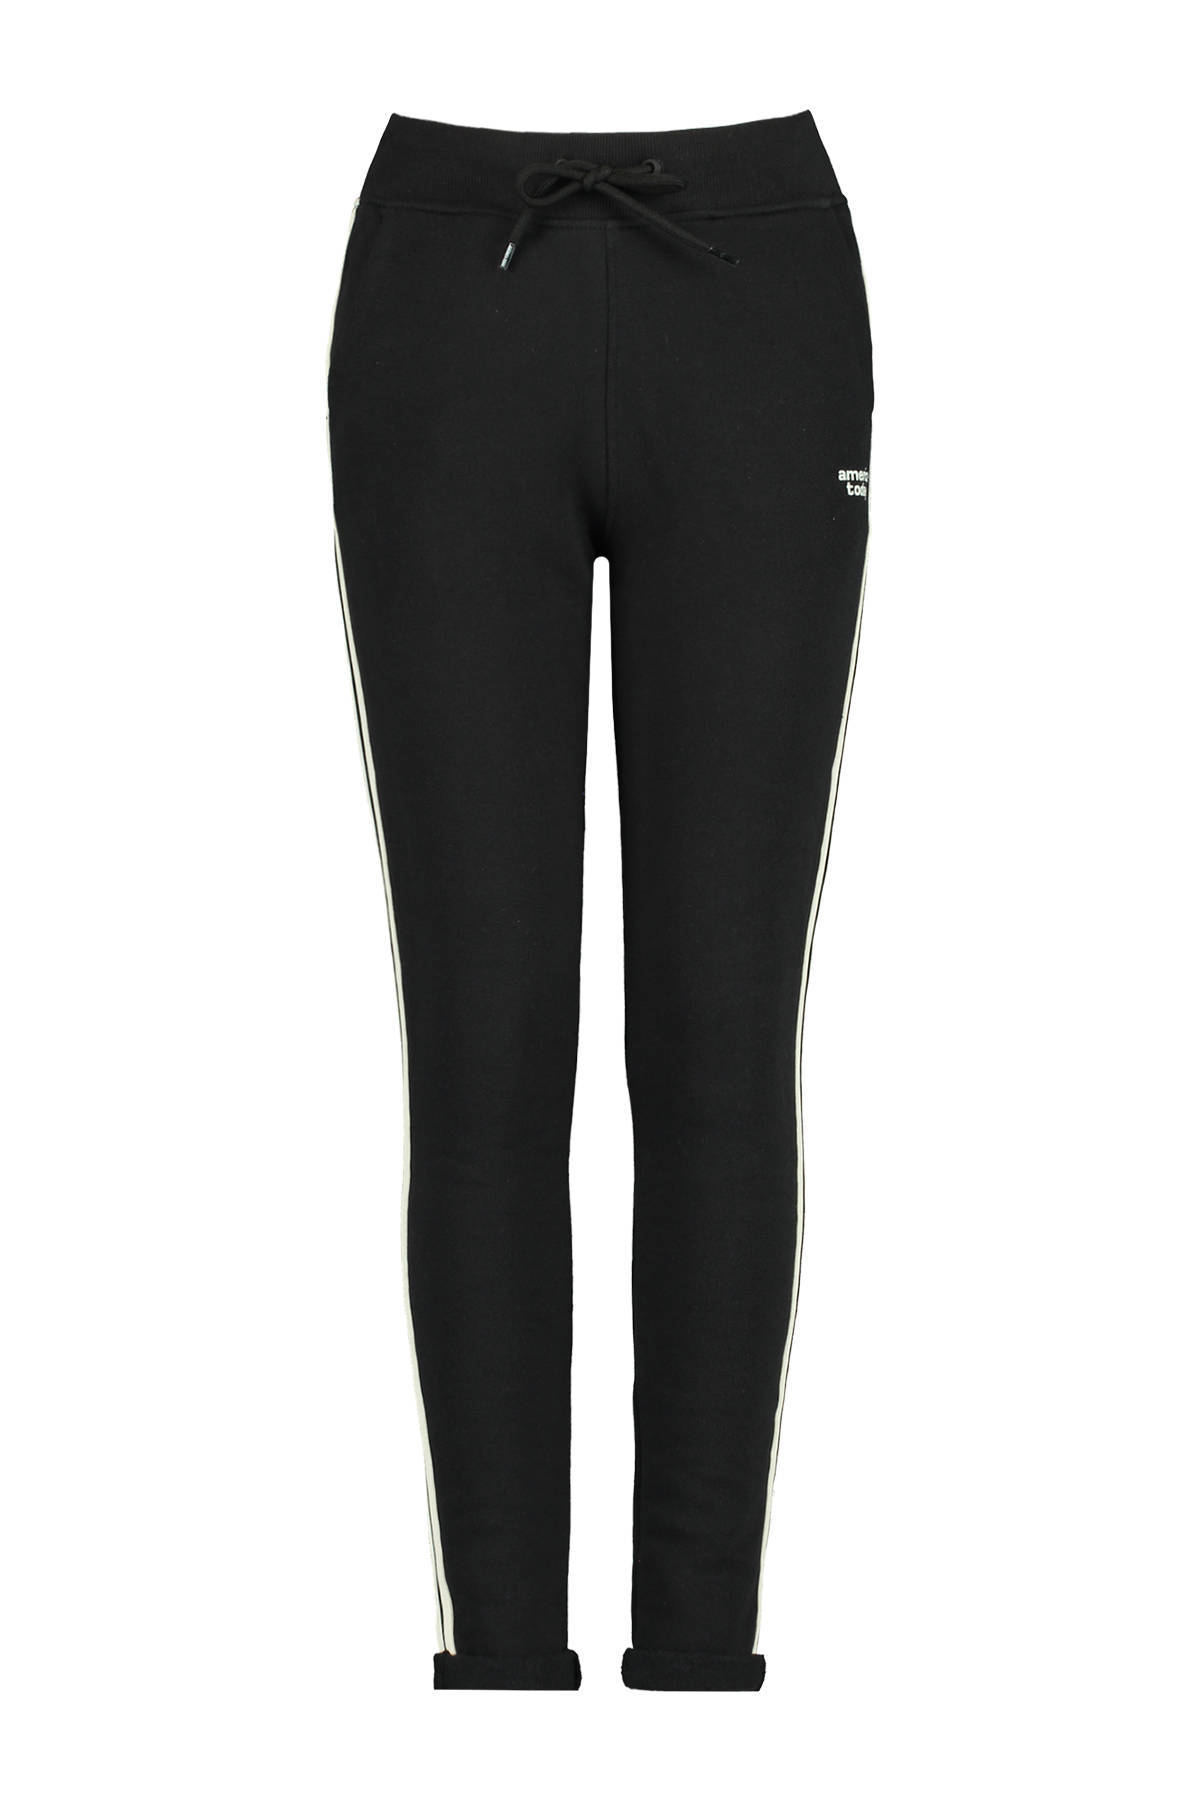 America Today Junior joggingbroek Celina met zijstreep zwart/wit online kopen